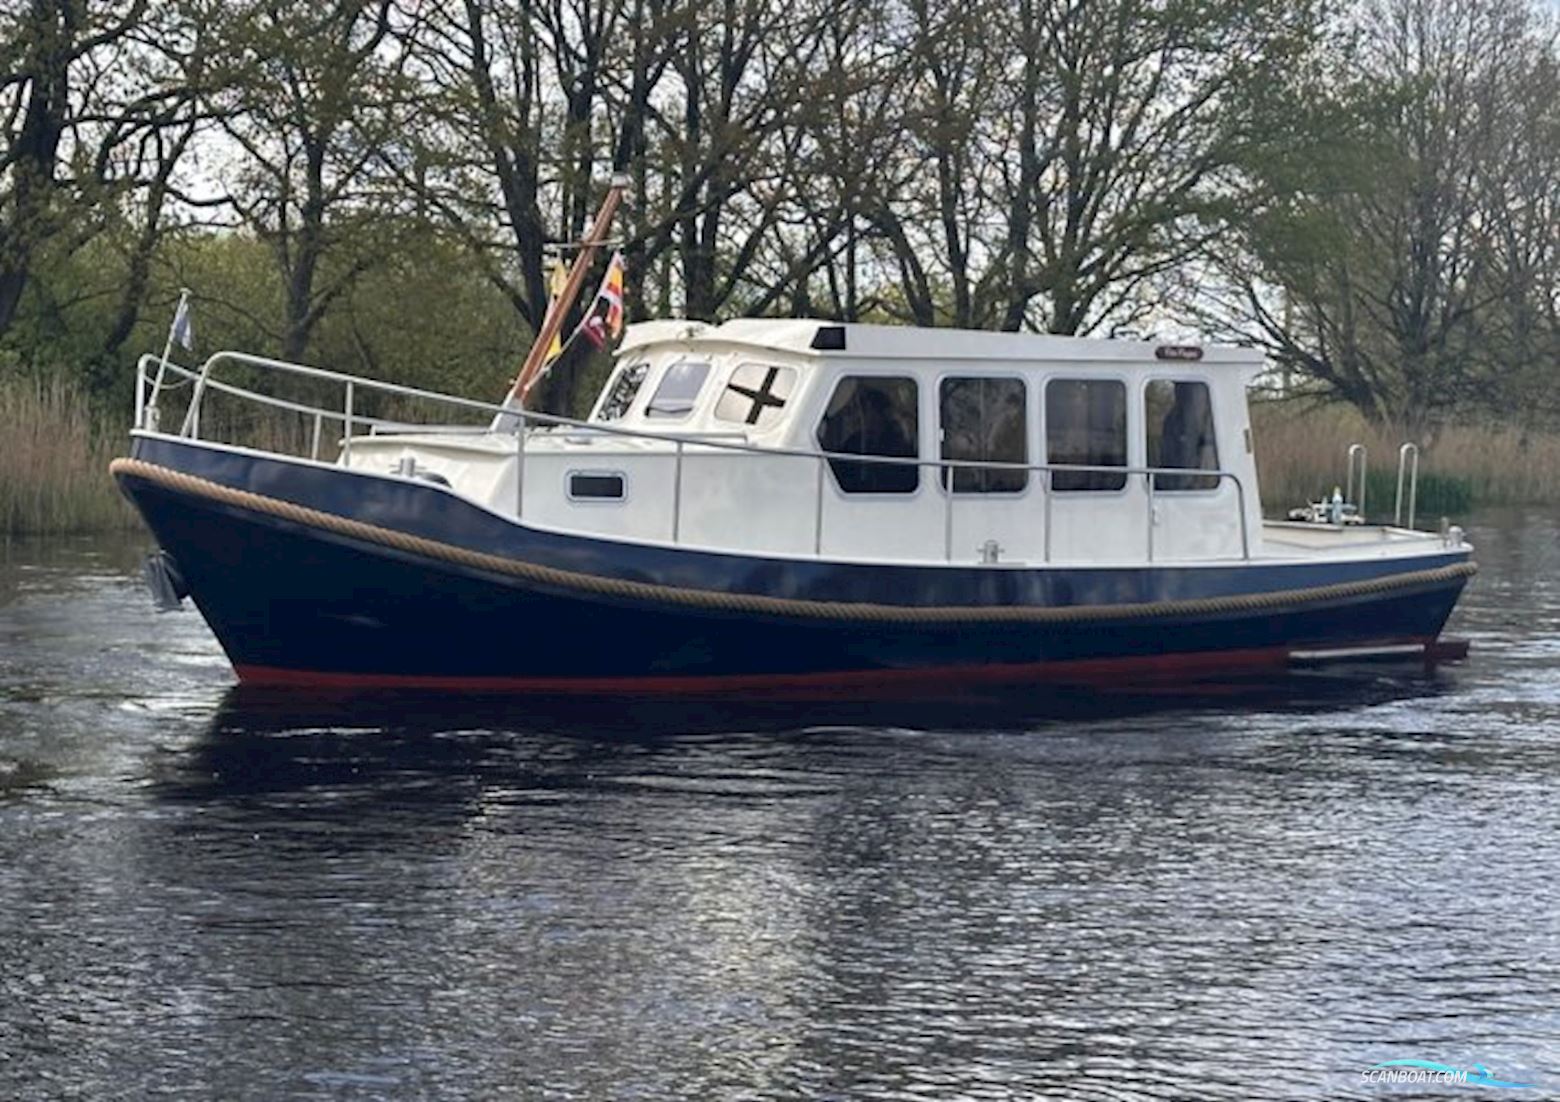 Zeevlet OK Bådtype ej oplyst 2000, med Perkins motor, Holland